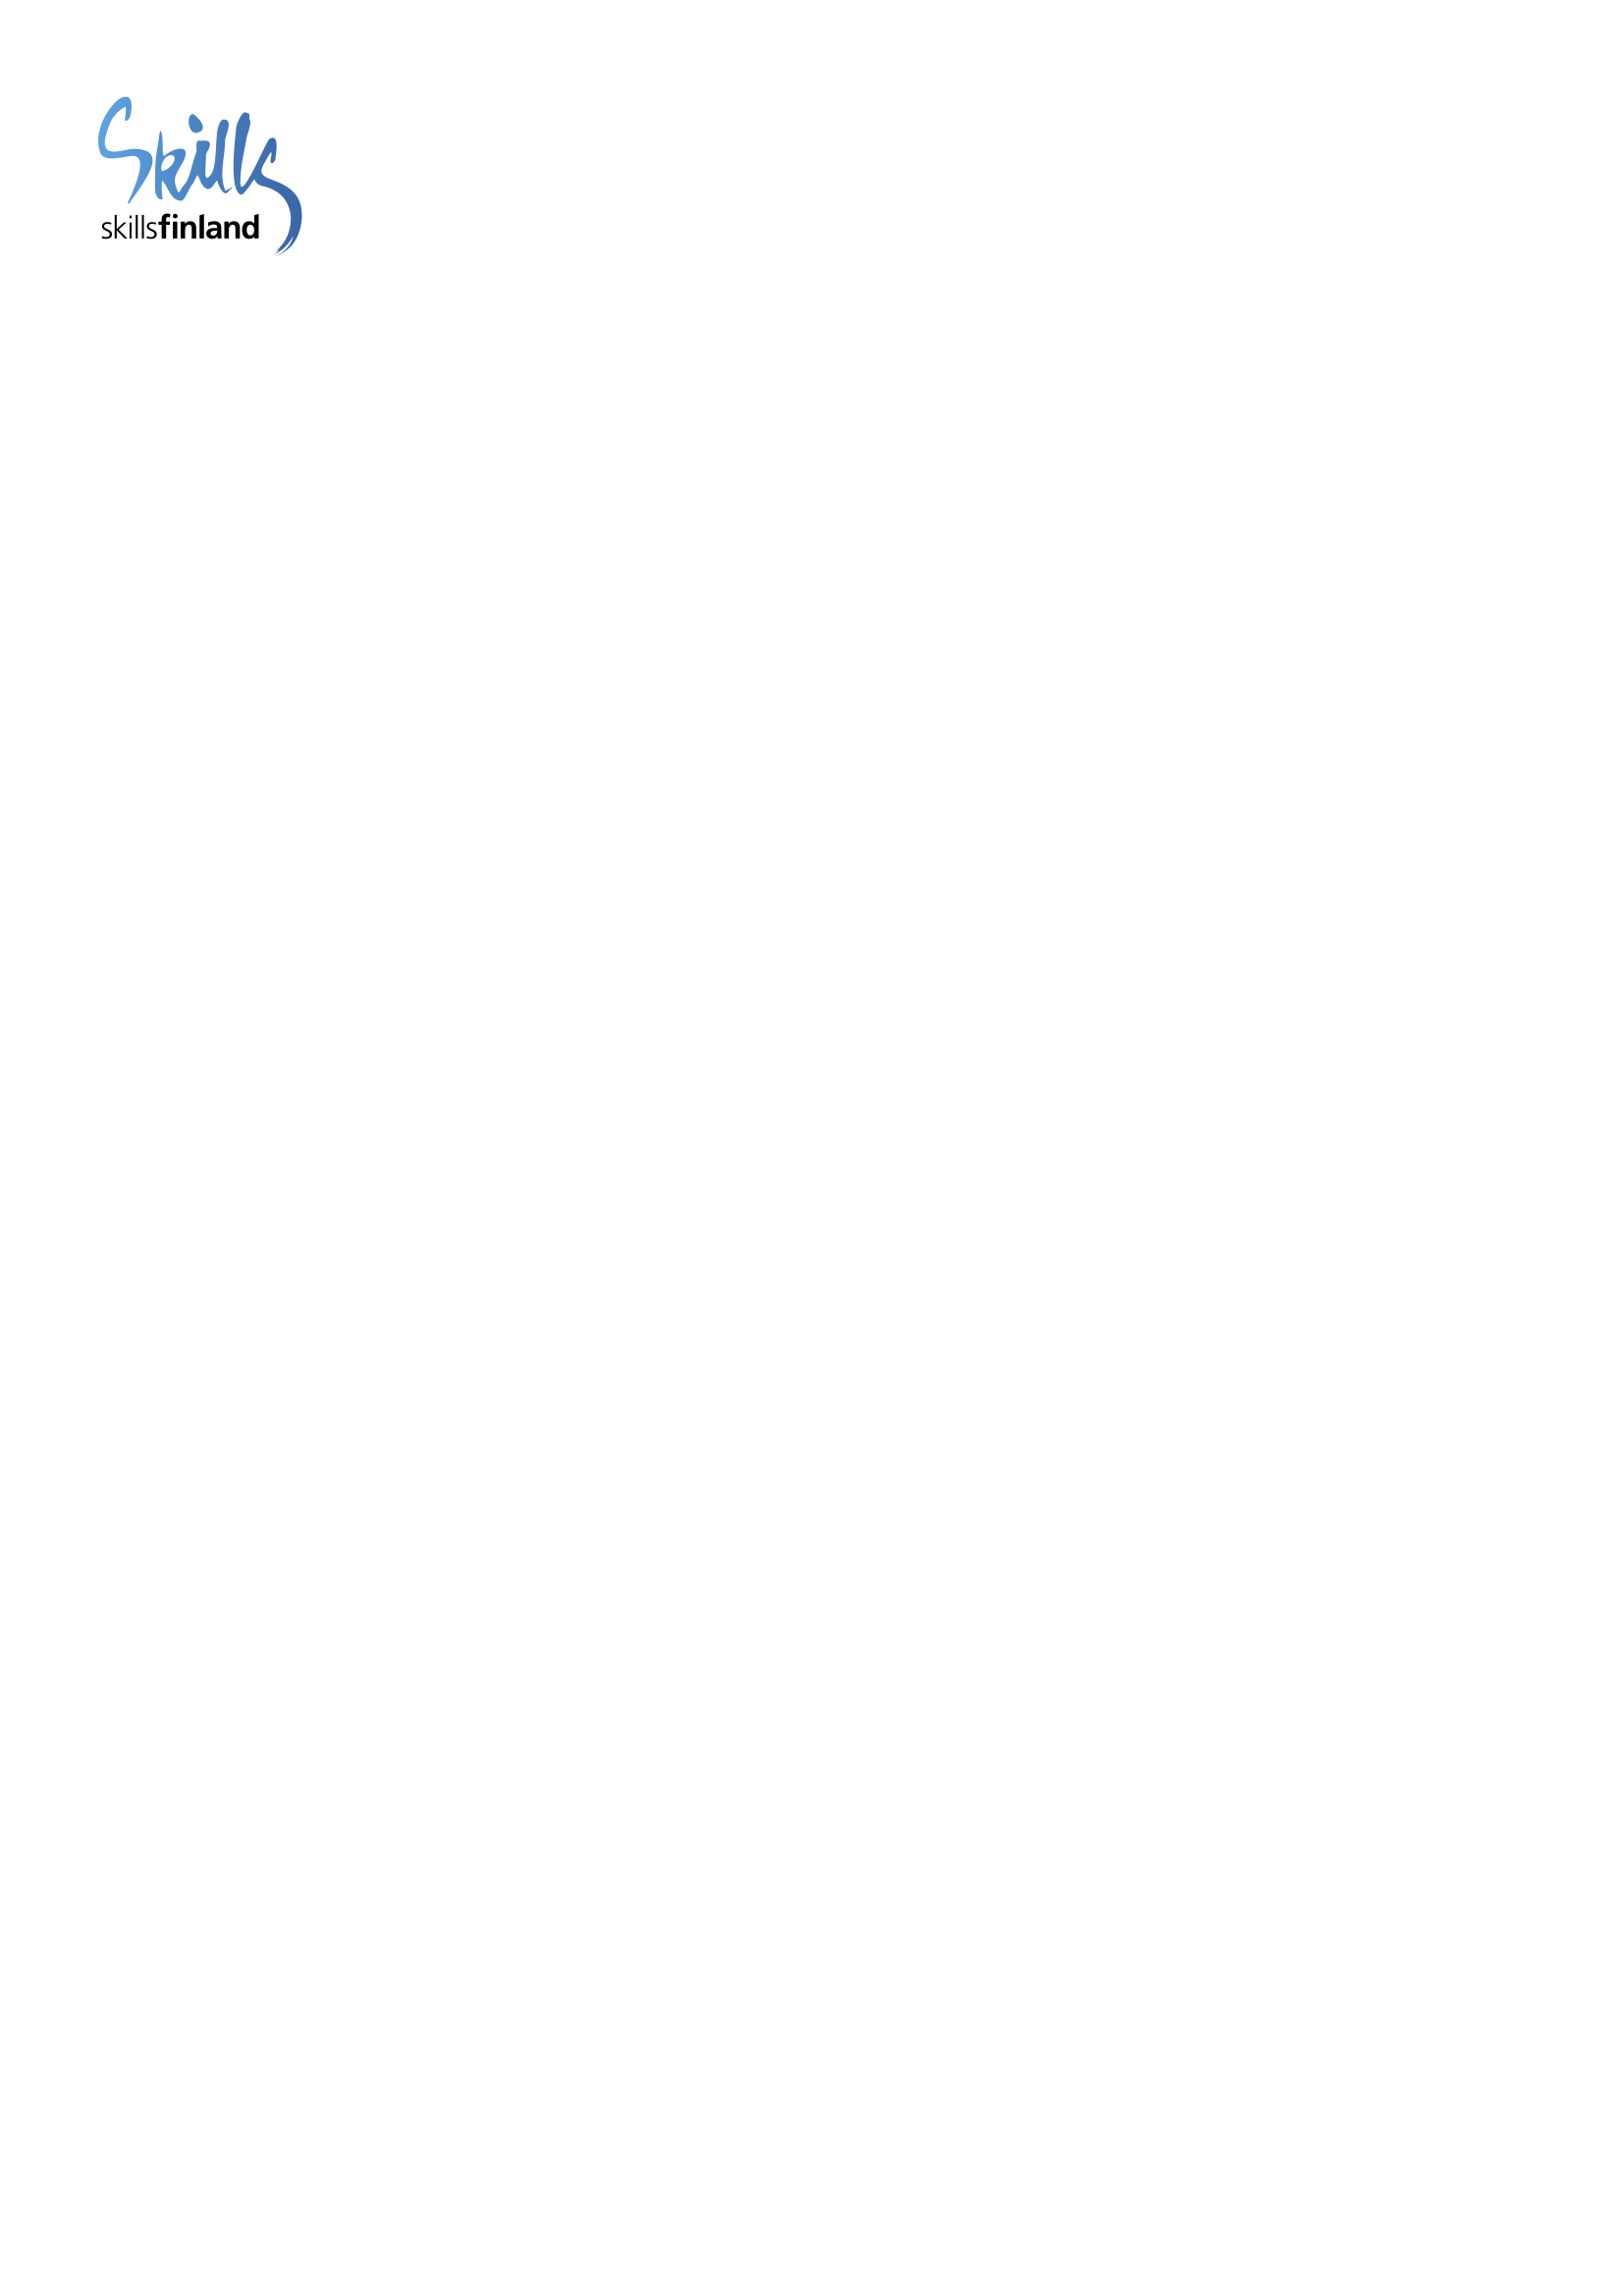 Liite 3 YHTEISTYÖSOPIMUS 2015 2017 SOPIJAOSAPUOLET Hallinnoija Skills Finland ry Simonkatu 12 B 24 00100 Helsinki Yhteyshenkilö Huippuvalmennuspäällikkö Teija Ripattila puhelinnumero +358 40